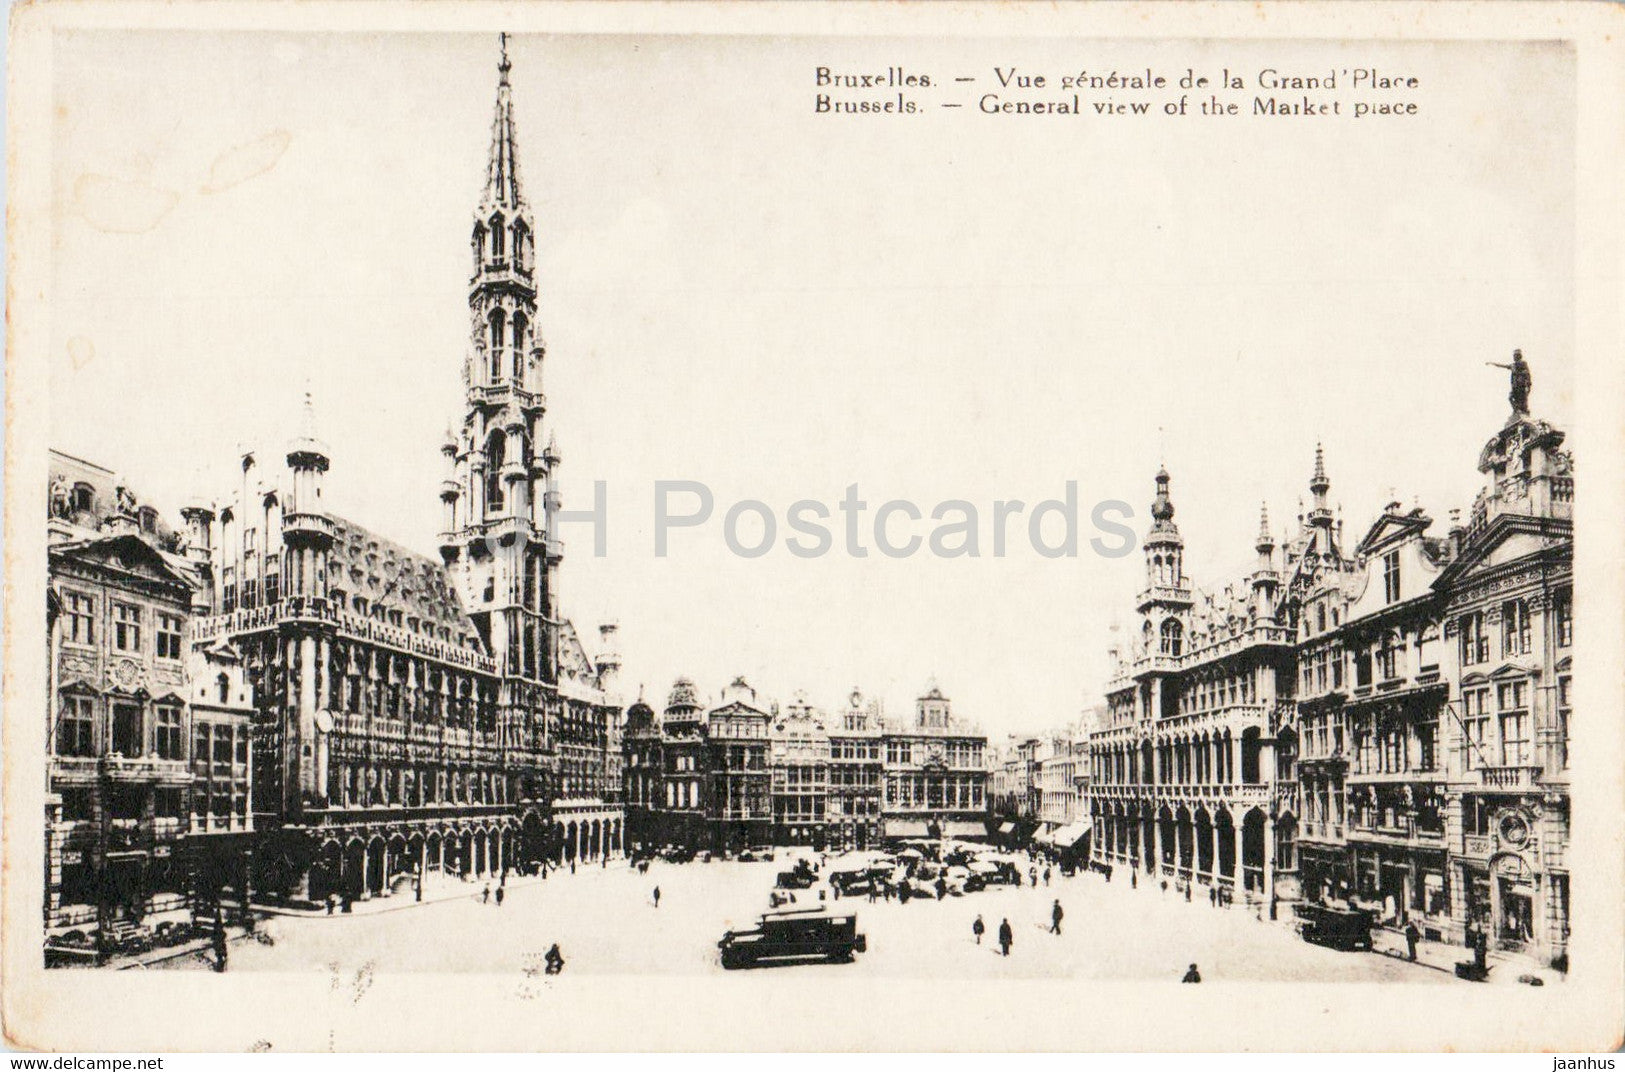 Bruxelles - Brussels - Vue Generale de la Grand Place - old postcard - Belgium - unused - JH Postcards